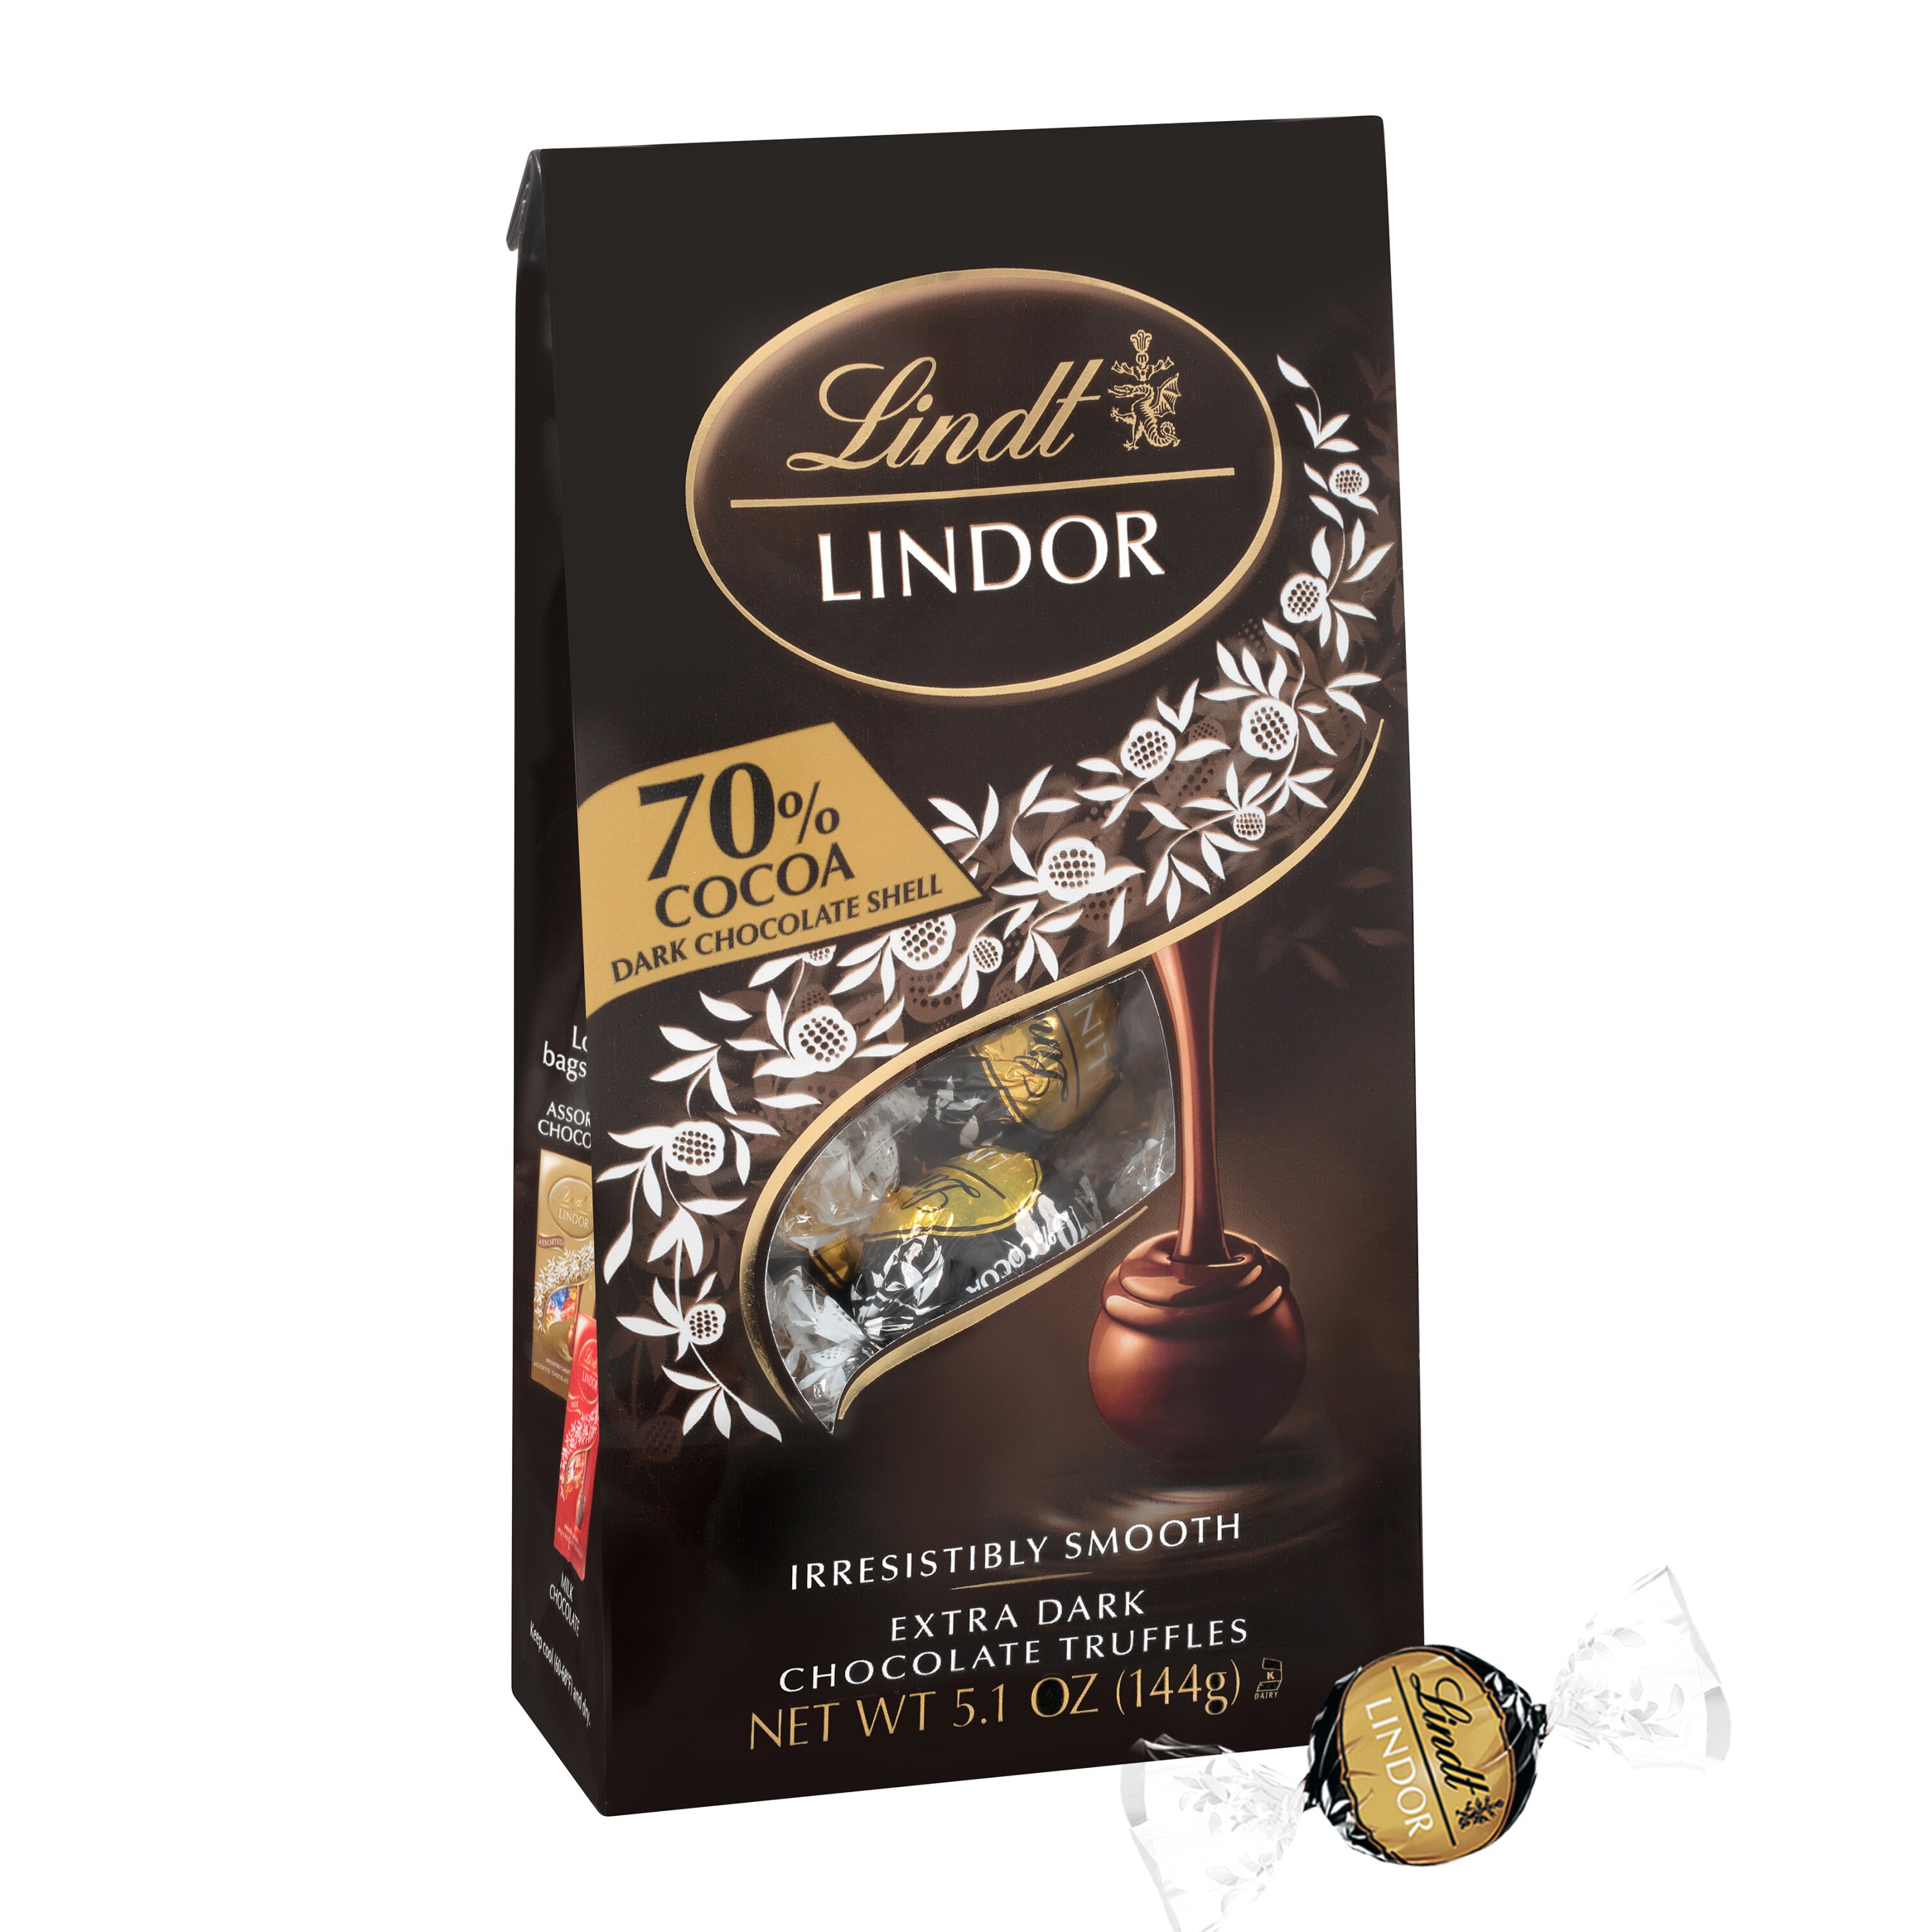  Lindt LINDOR 70% Dark Chocolate Truffles, 5.1 OZ 